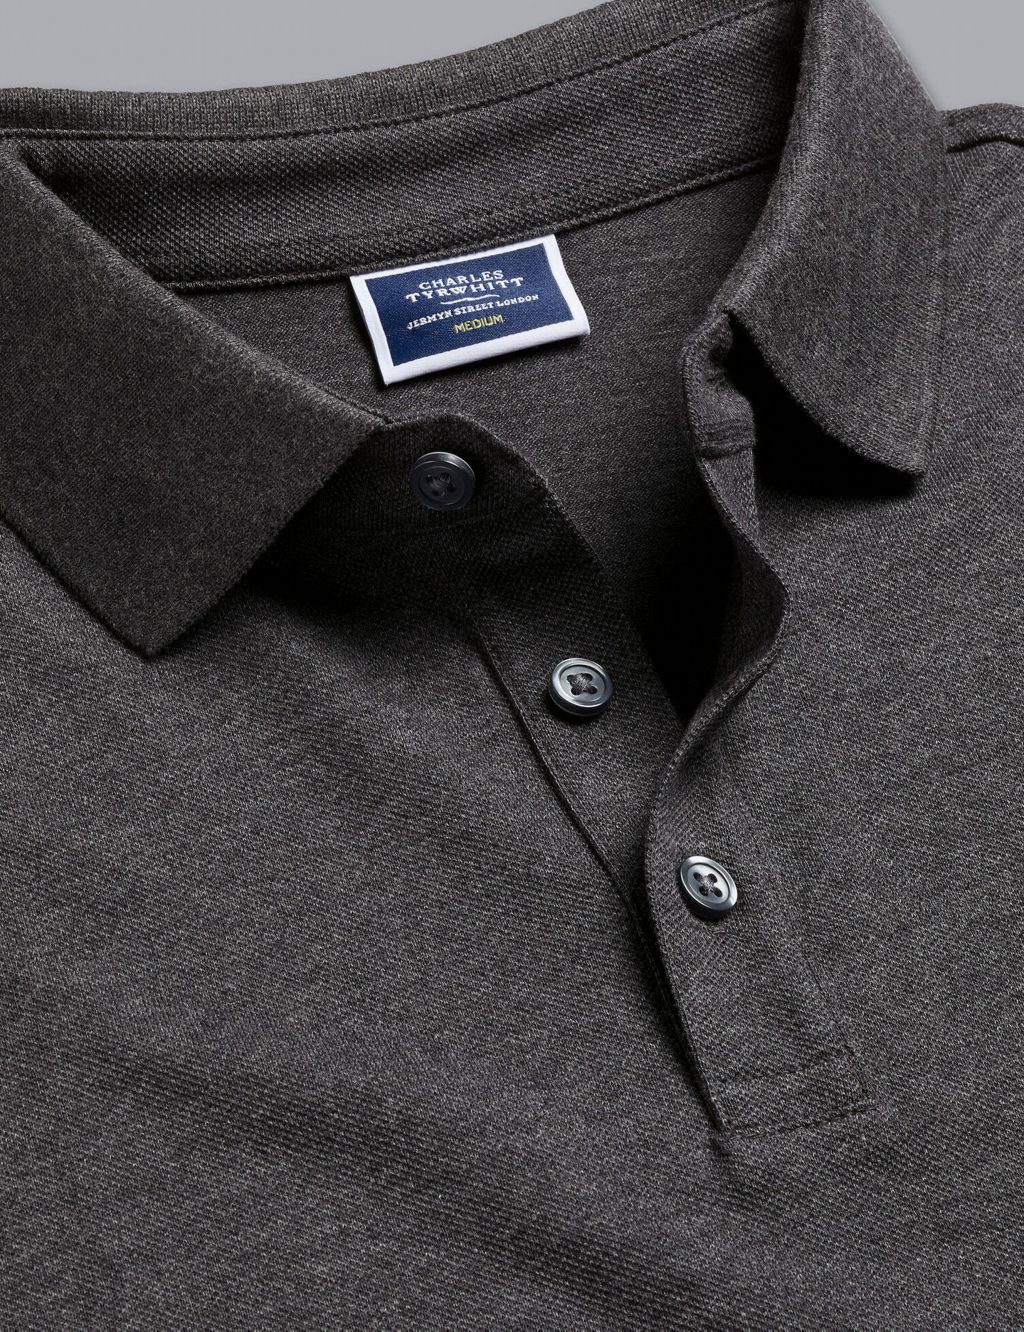 Cotton Rich Pique Polo Shirt | Charles Tyrwhitt | M&S